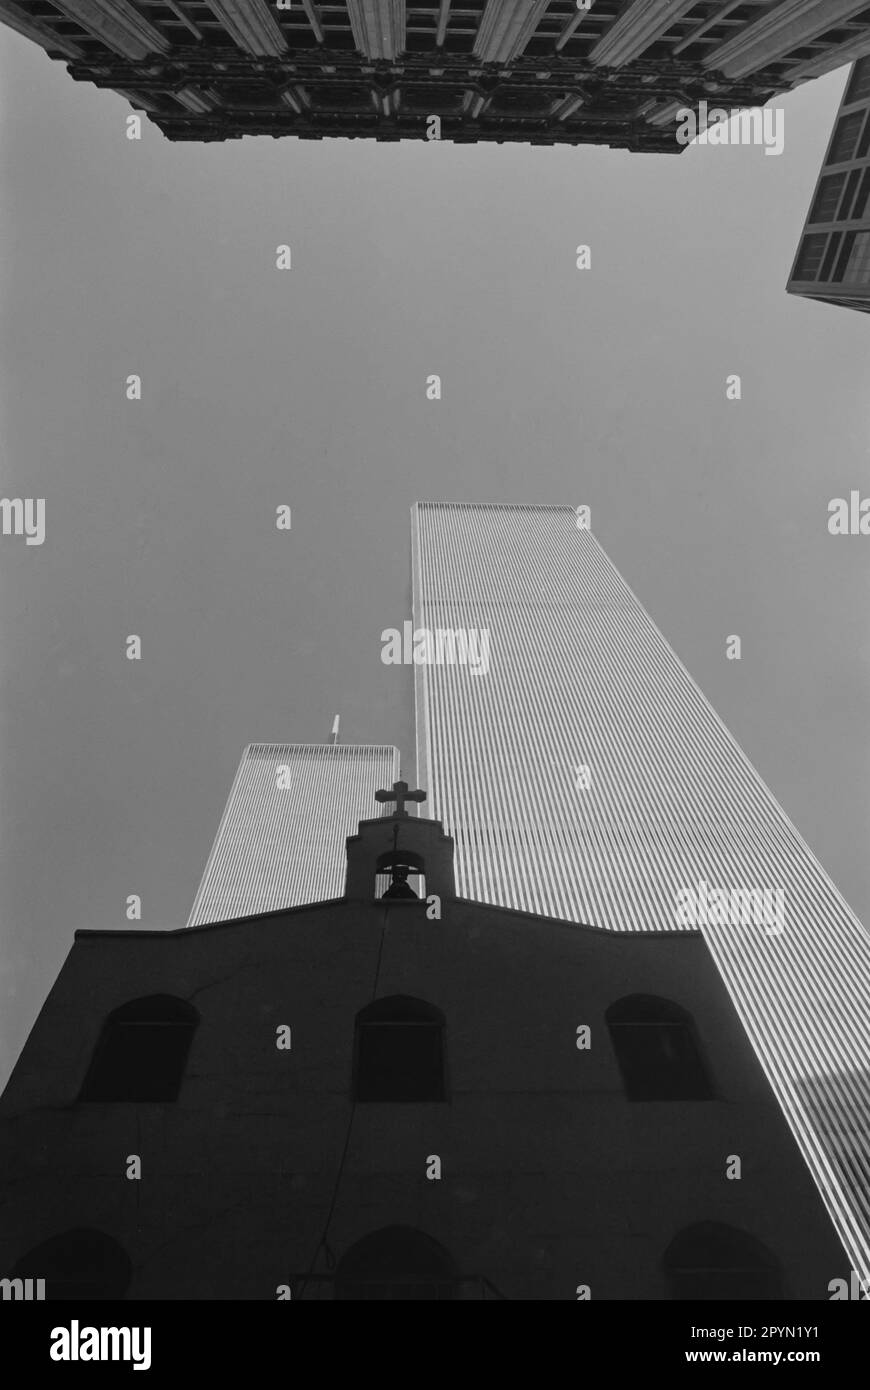 1990: Il World Trade Center e St. Nicholas greco ortodossa Chiesa, che ha iniziato i servizi al 155 Cedar Street nel 1922. Tutti e tre gli edifici sono stati distrutti negli attentati terroristici del 9/11 a New York City nel 2001. La chiesa, ricostruita con un costo di $85 milioni di dollari, è stata riaperta nel 2022 ed è ora anche un santuario nazionale. Foto Stock